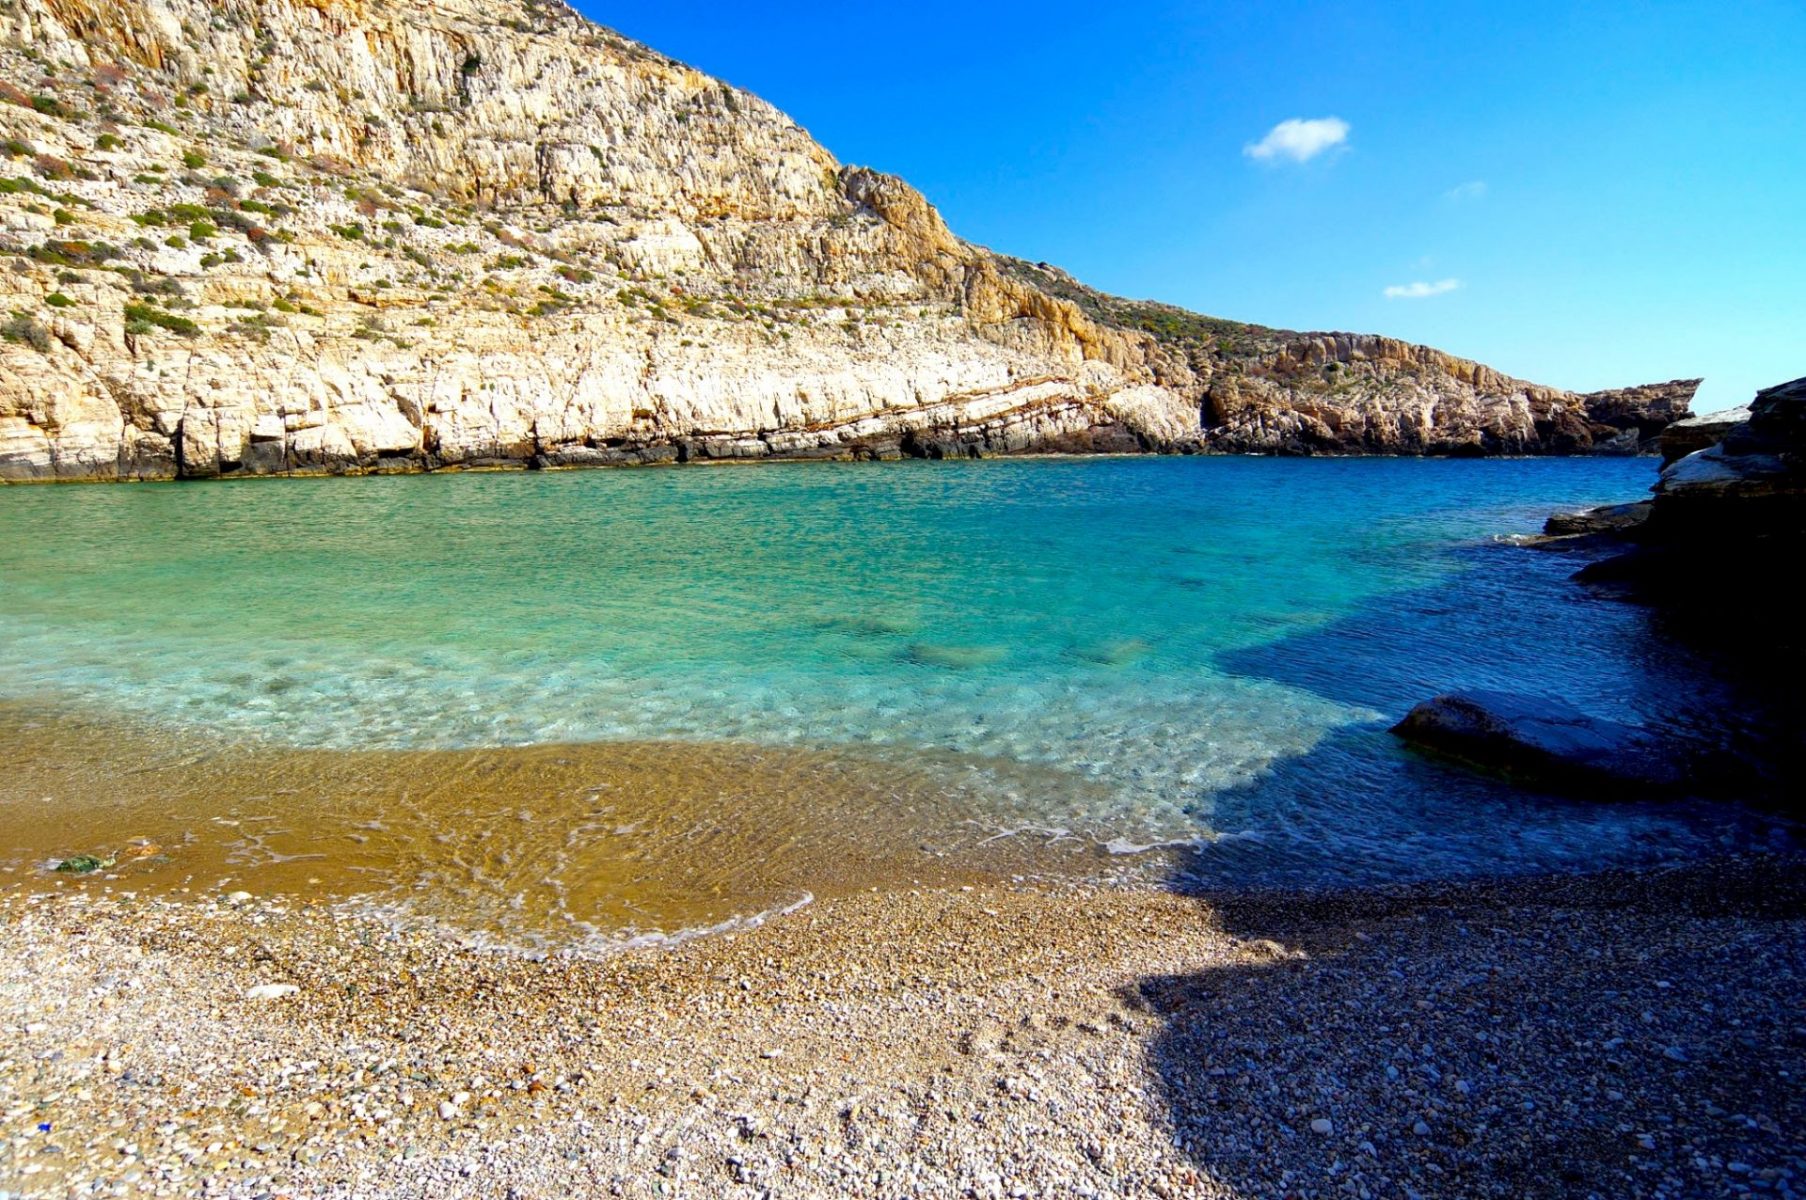 Παραλίες που θυμίζουν Καραϊβική, ηλιοβασίλεμα-όνειρο: Το μικρό ελληνικό νησί που παρακαλάμε να μην μάθουν οι ξένοι